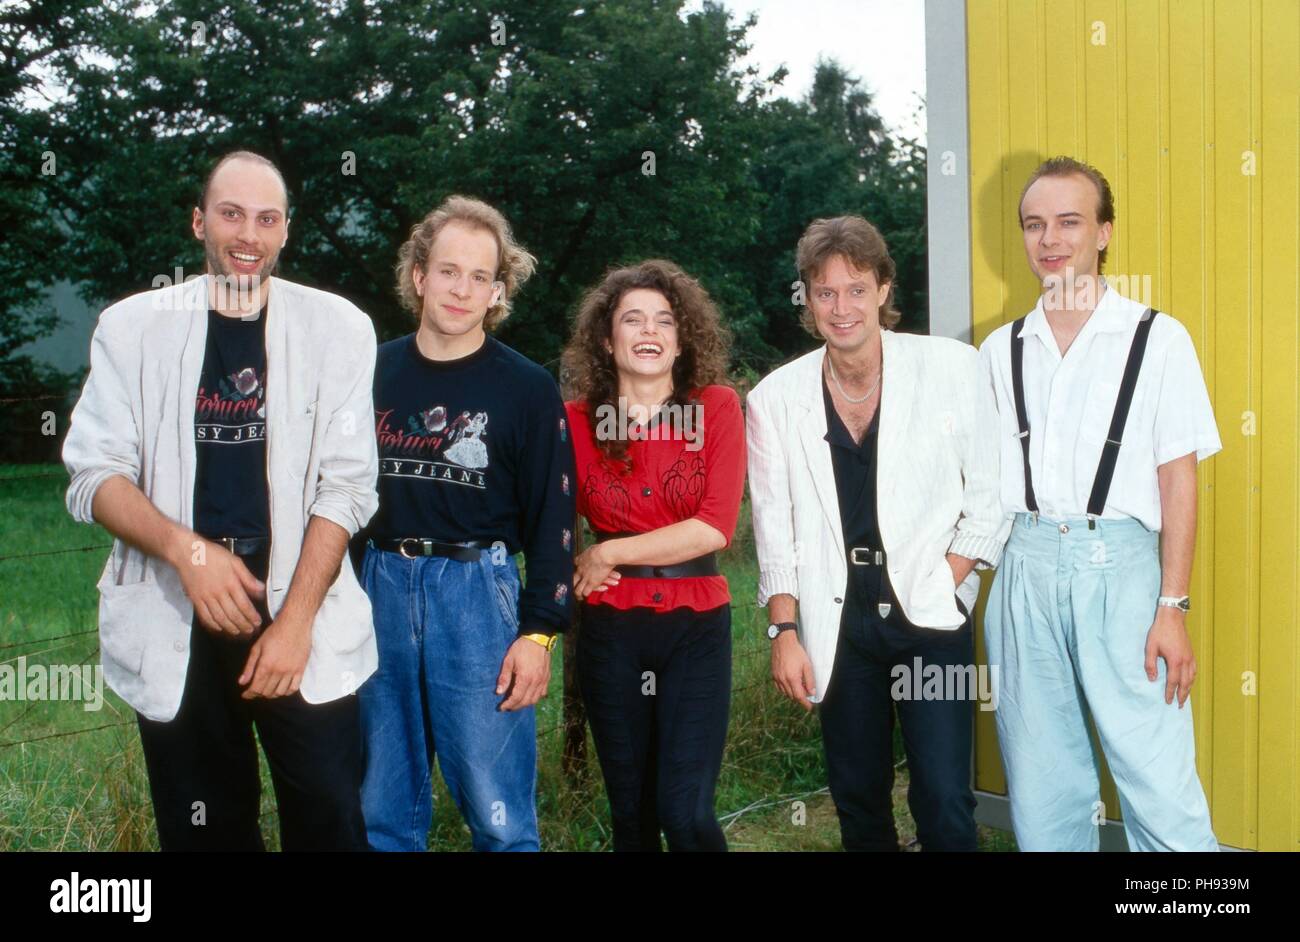 Jule Neigel, deutsche Sängerin und Sonschreiberin bei der ZDF Hitparade in Brühl, Deutschland 1988. German singer and song writer Jule Neigel at Germa Stock Photo